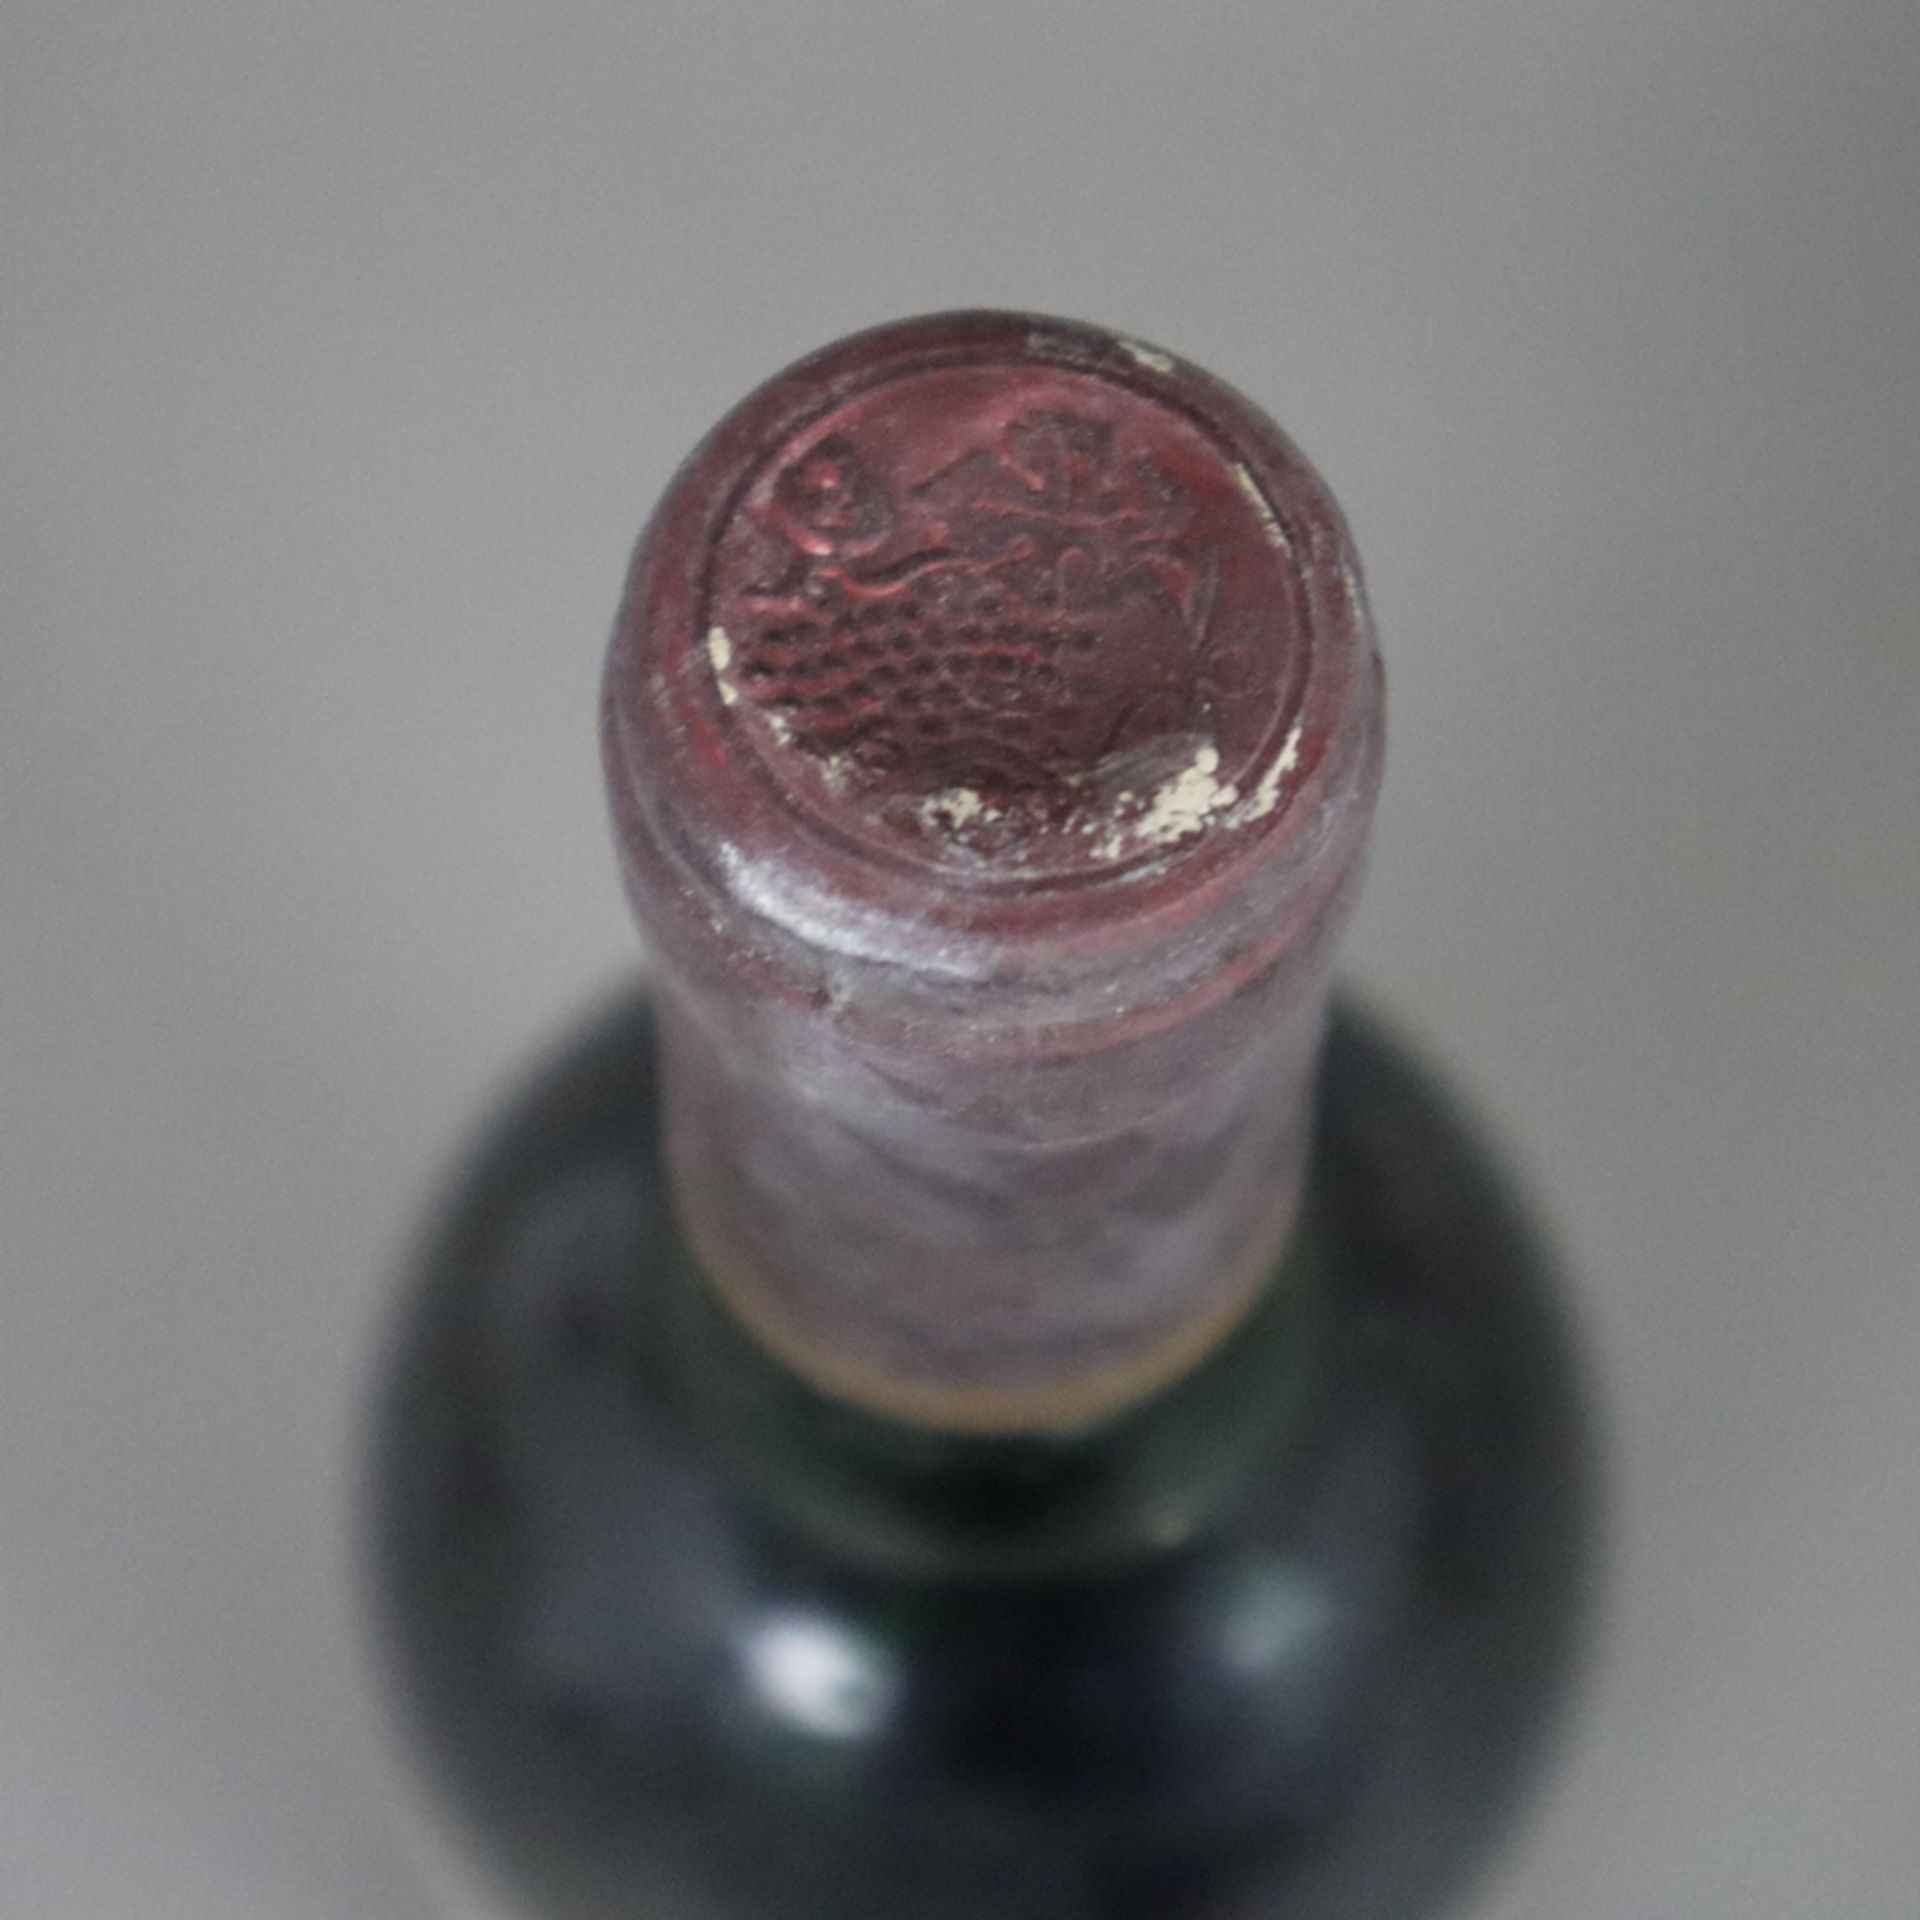 Weinkonvolut - 2 Flaschen, France, 1985 Château La Grâce Dieu des Prieurs, Saint-Èmilion Grand Cru/ - Bild 2 aus 8